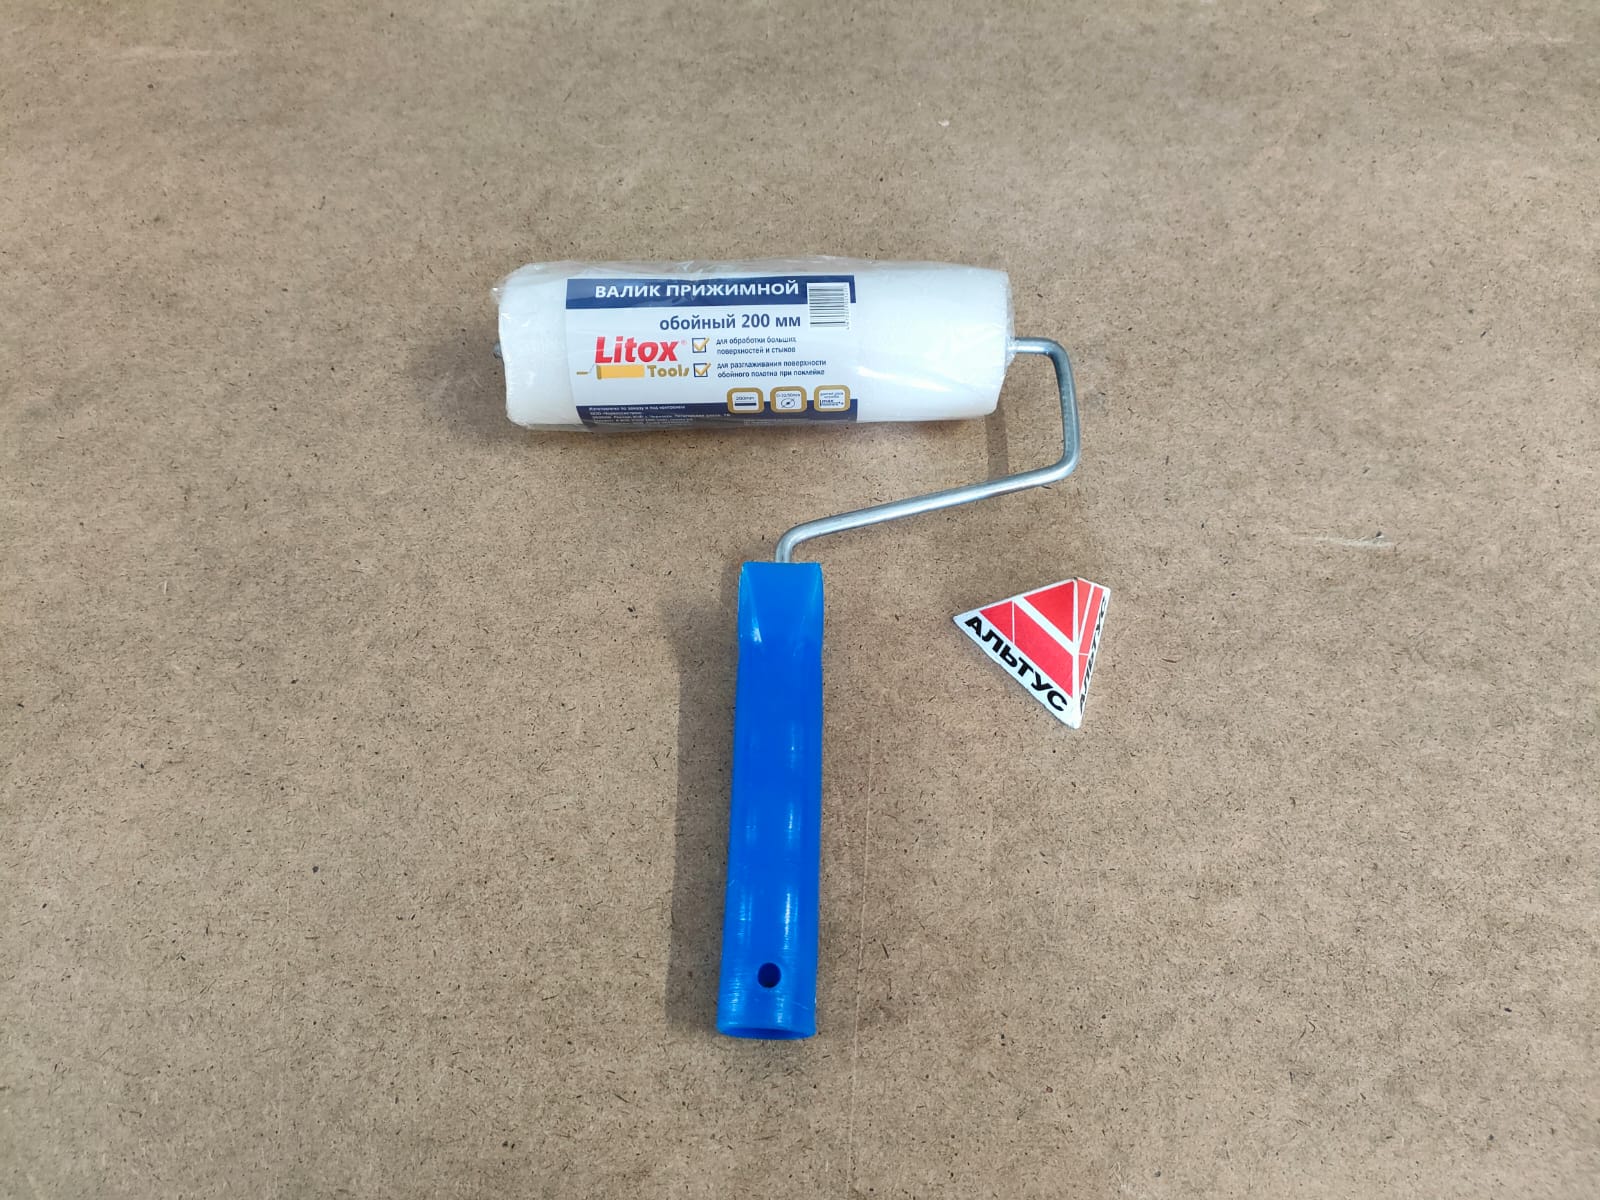 Обойный валик прижимной 200 мм, белый, бюгель 6 мм Litox tools